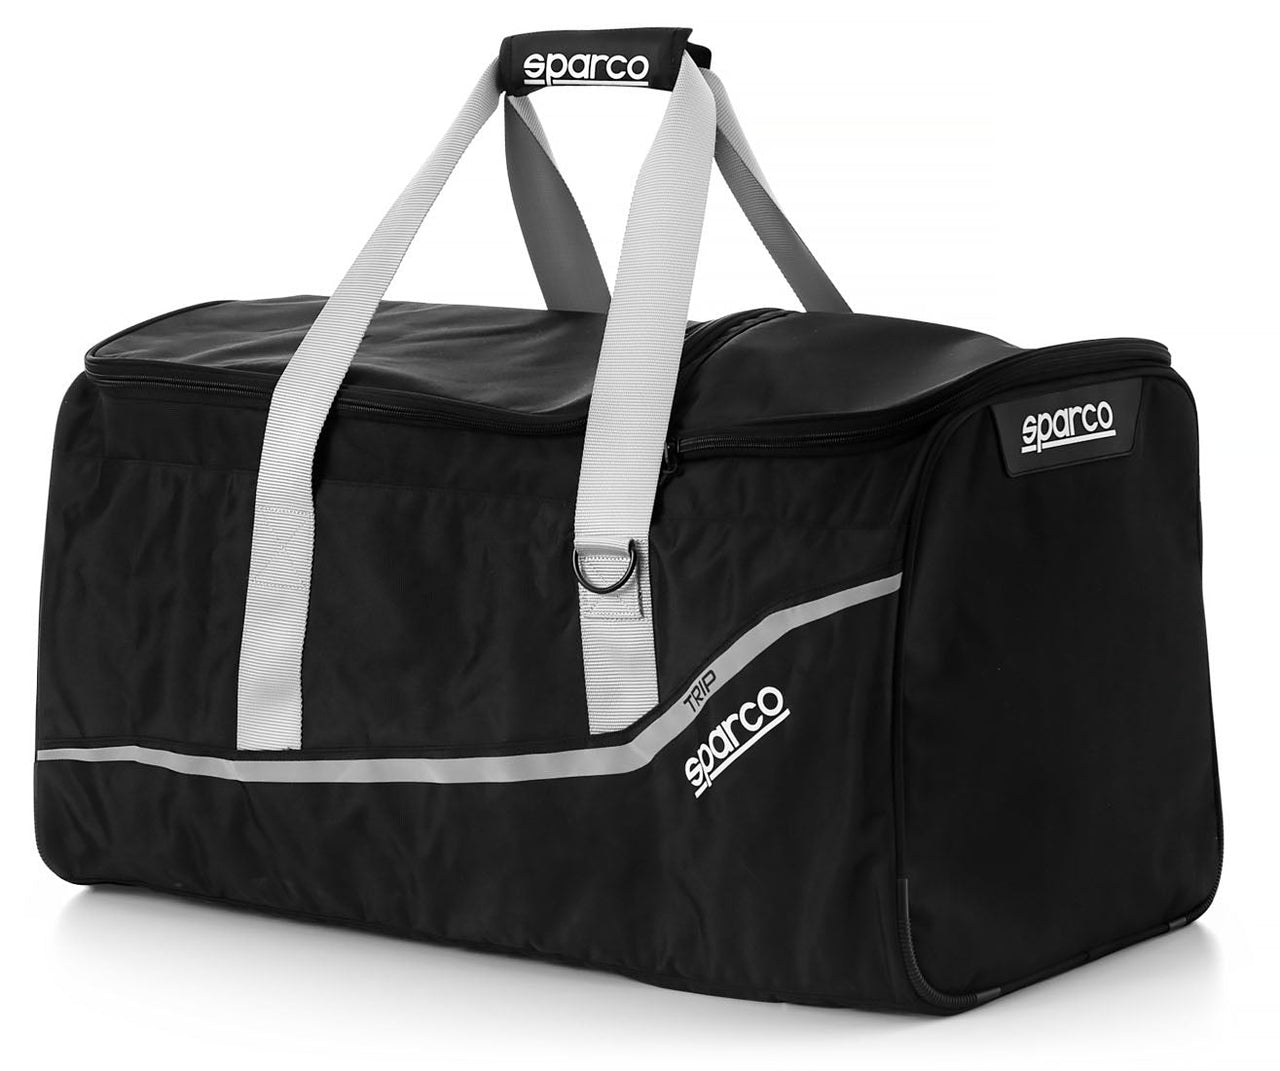 Sparco Trip Gear Bag